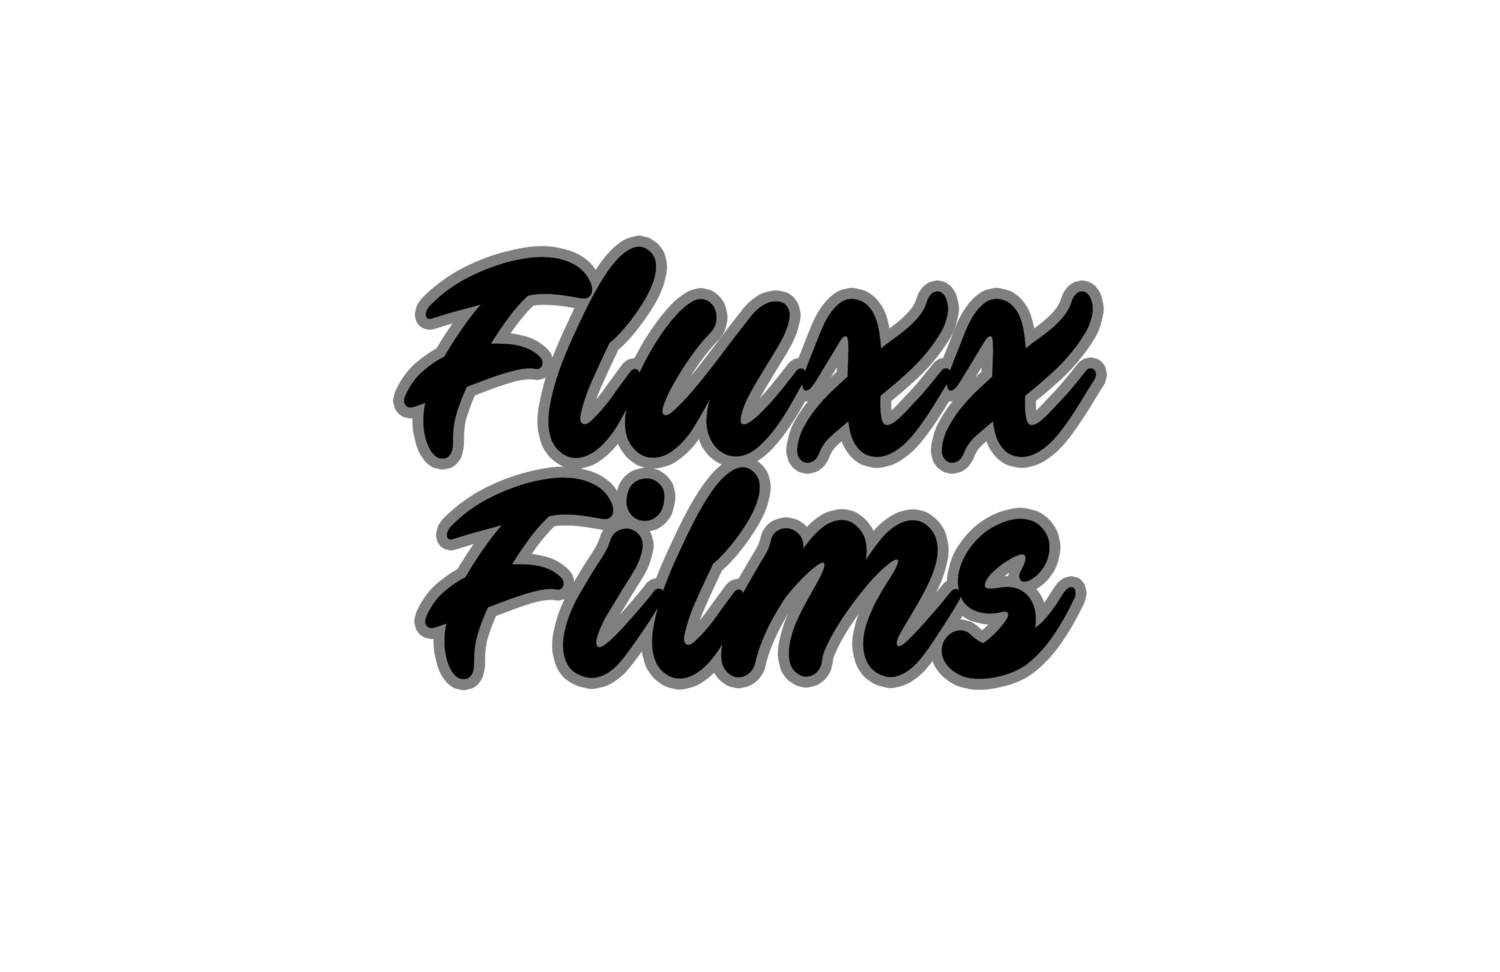 Fluxx Films